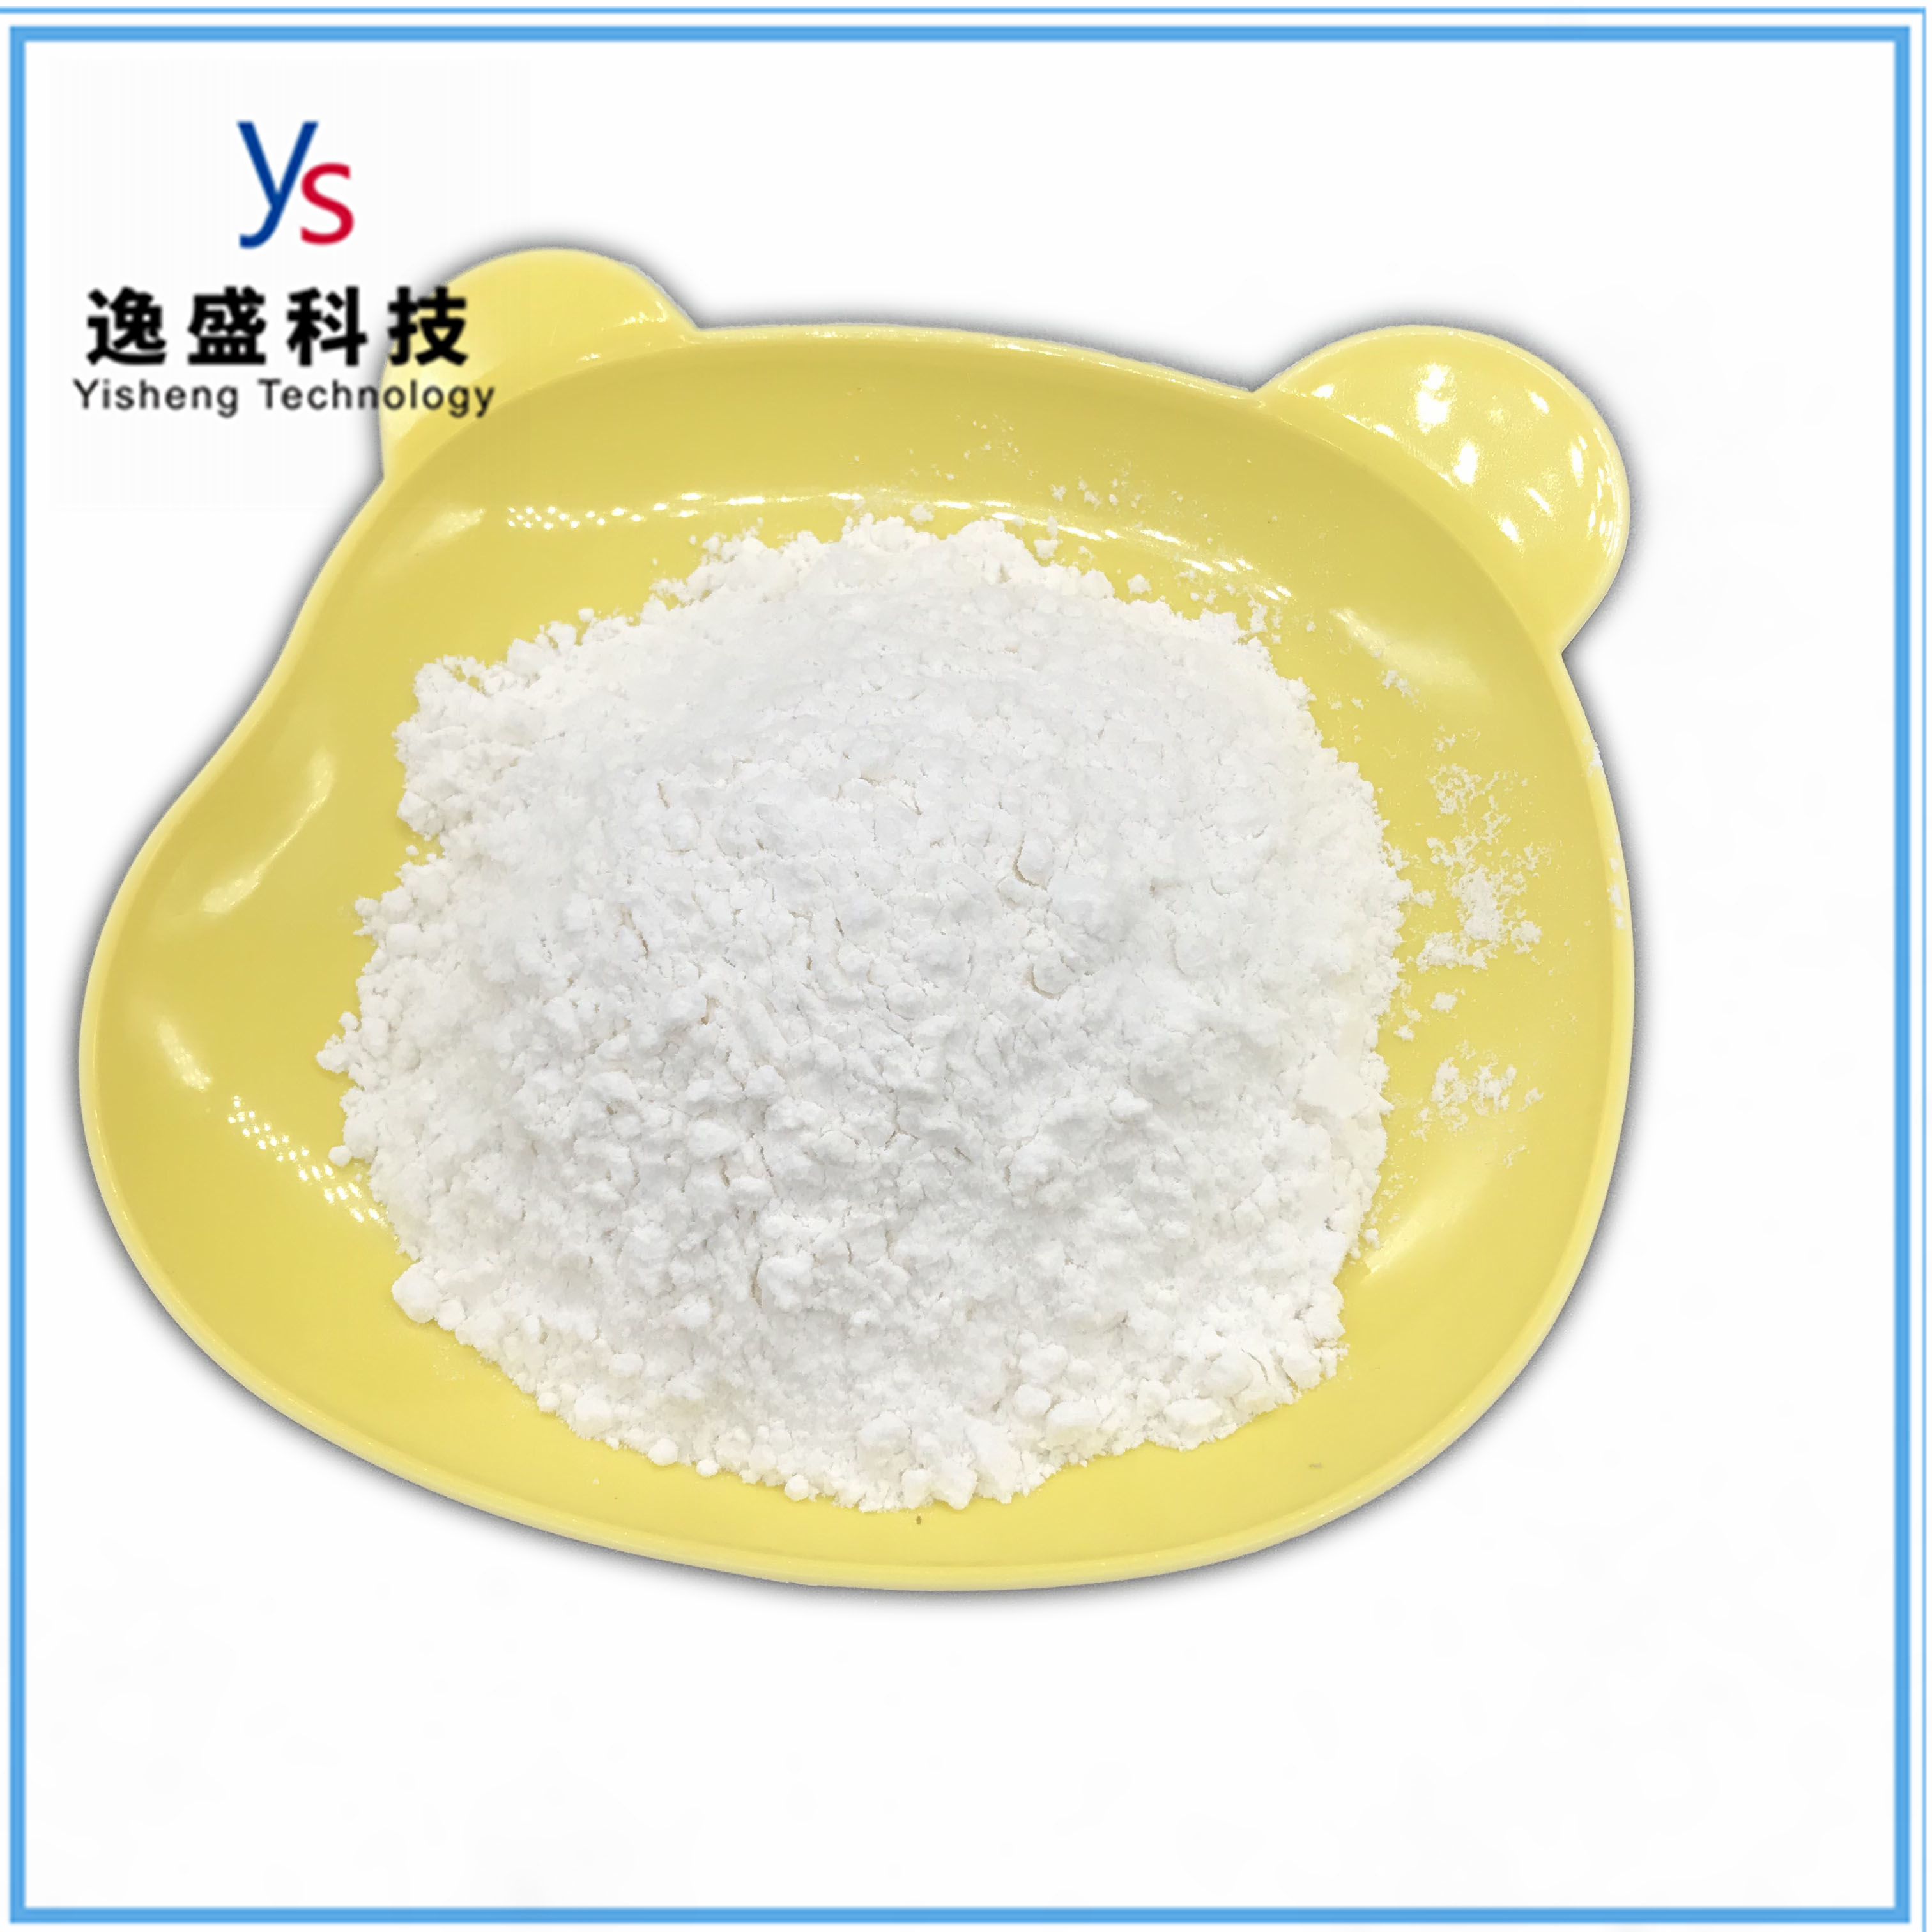 CAS 5413-05-8 Ethyl 3-oxo-4-fenylbutanoaat Farmaceutische tussenproducten Goede kwaliteit 